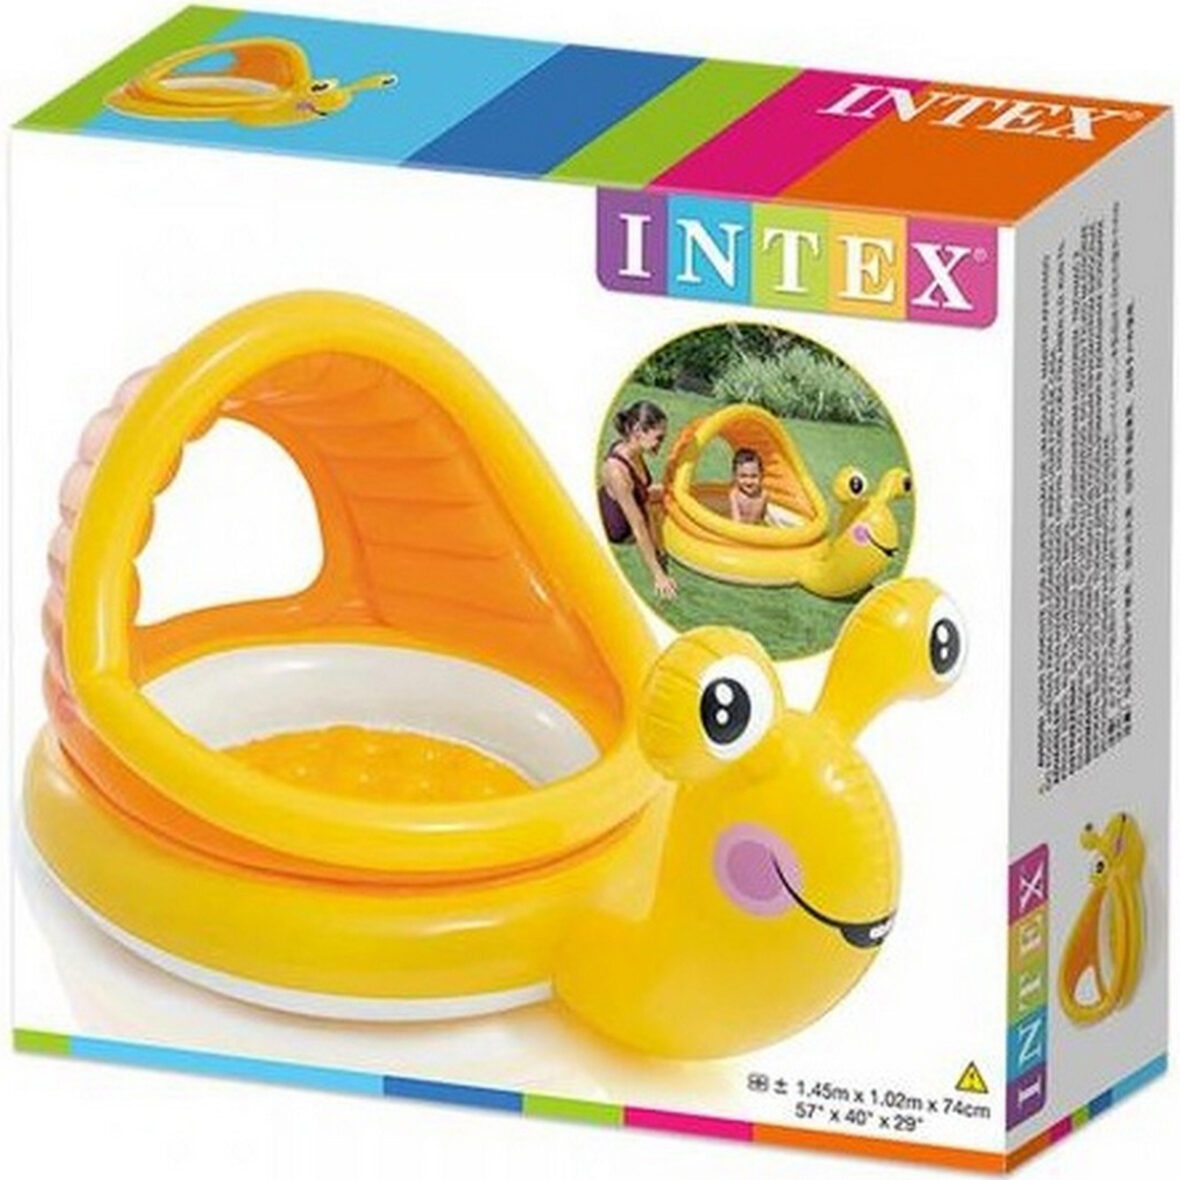 Intex Snail Shade Baby Pool -57124.2